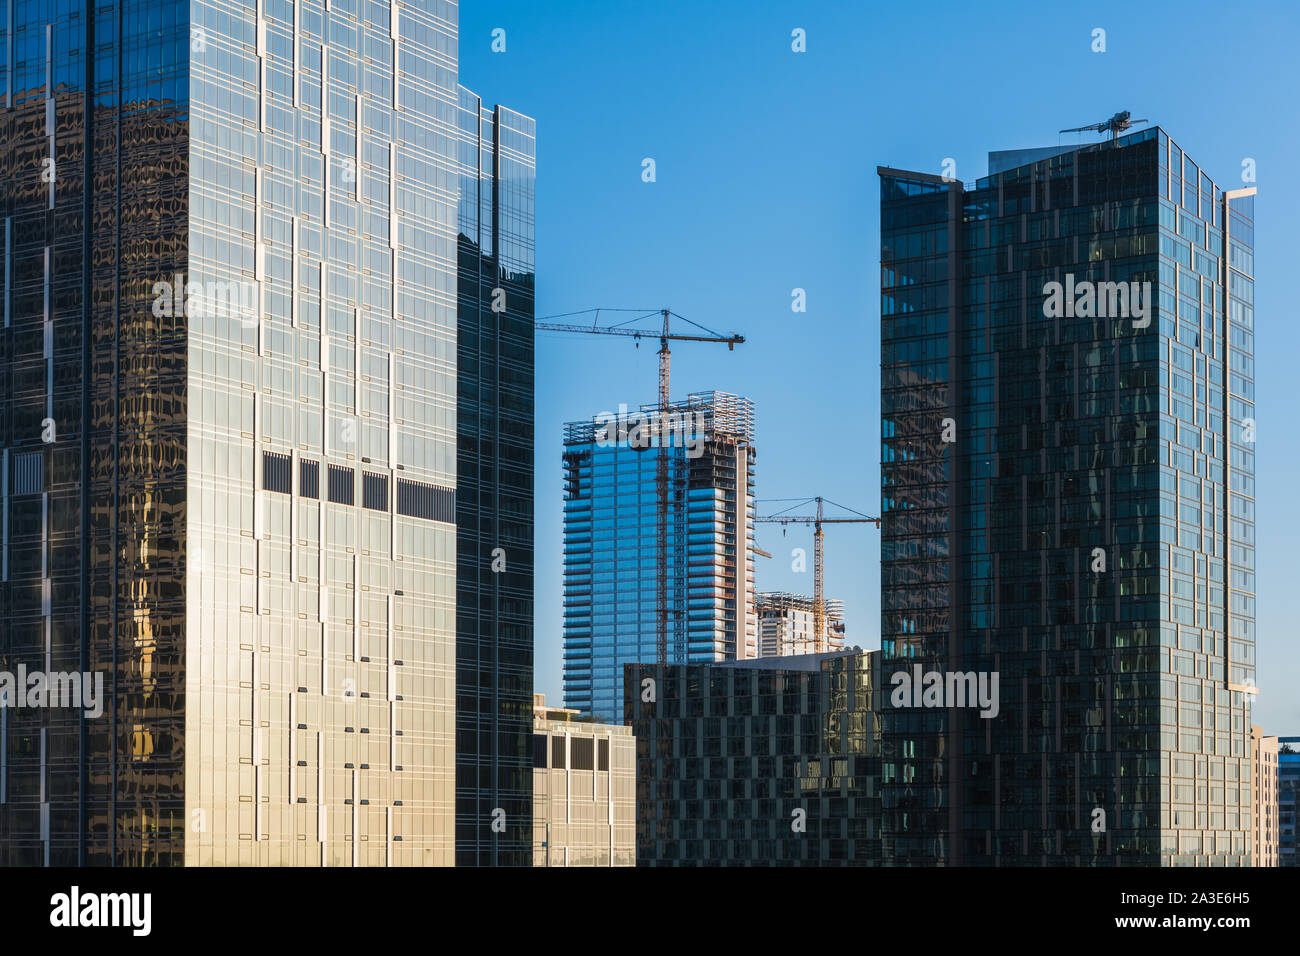 Larga scala di immobili commerciali nello sviluppo della moderna in vetro e acciaio grattacieli e gru con nuova costruzione Foto Stock